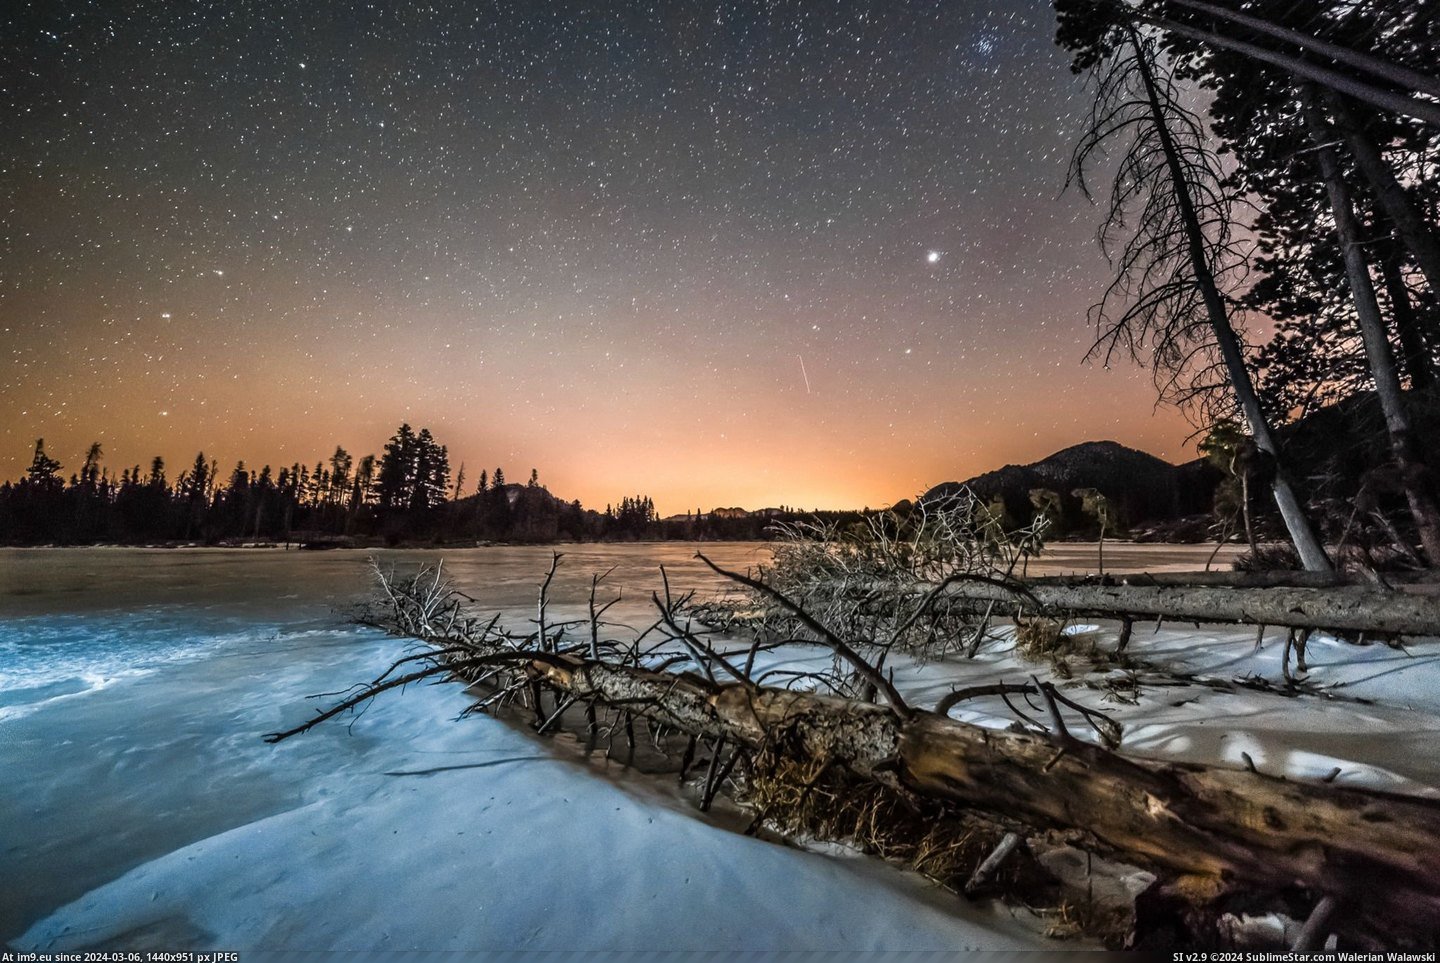 #Park #National #Lake #Rocky #Sprague #Mountain #Colorado #Frozen [Earthporn] On a frozen Sprague Lake in Rocky Mountain National Park, Colorado [OC][2047x1364] Pic. (Изображение из альбом My r/EARTHPORN favs))